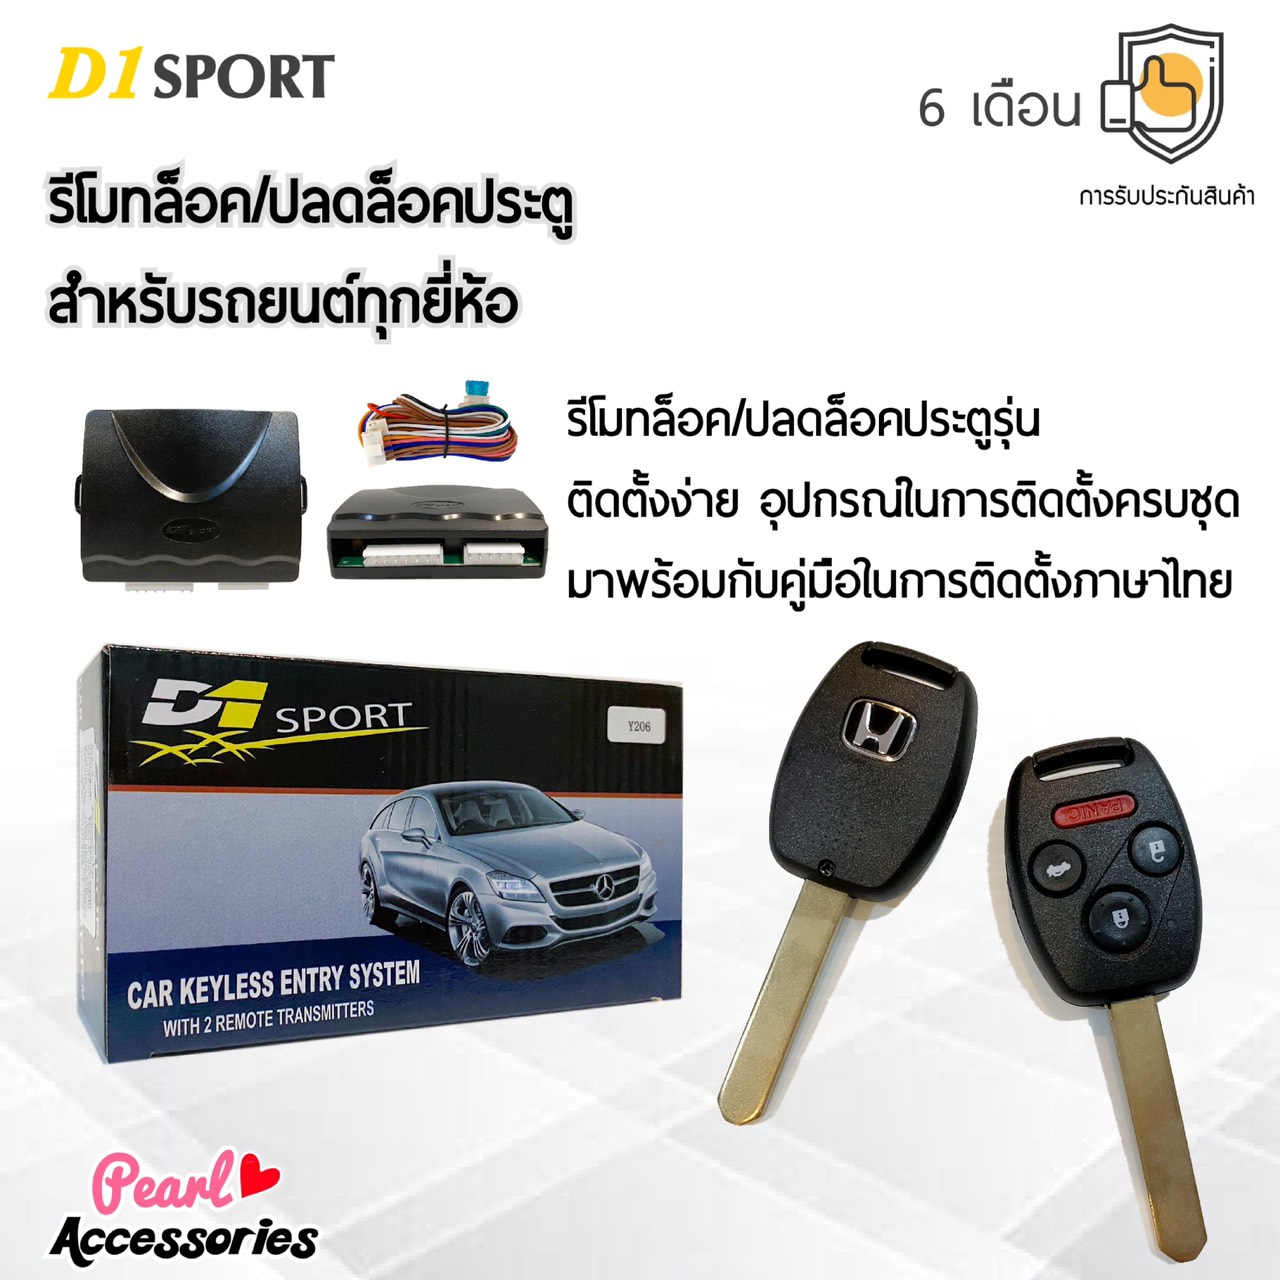 D1 Sport รีโมทล็อค/ปลดล็อคประตูรถยนต์ Y109 กุญแจทรง Honda สำหรับรถยนต์ทุกยี่ห้อ อุปกรณ์ในการติดตั้งครบชุด (คู่มือในการติดตั้งภาษาไทย) Car keyless